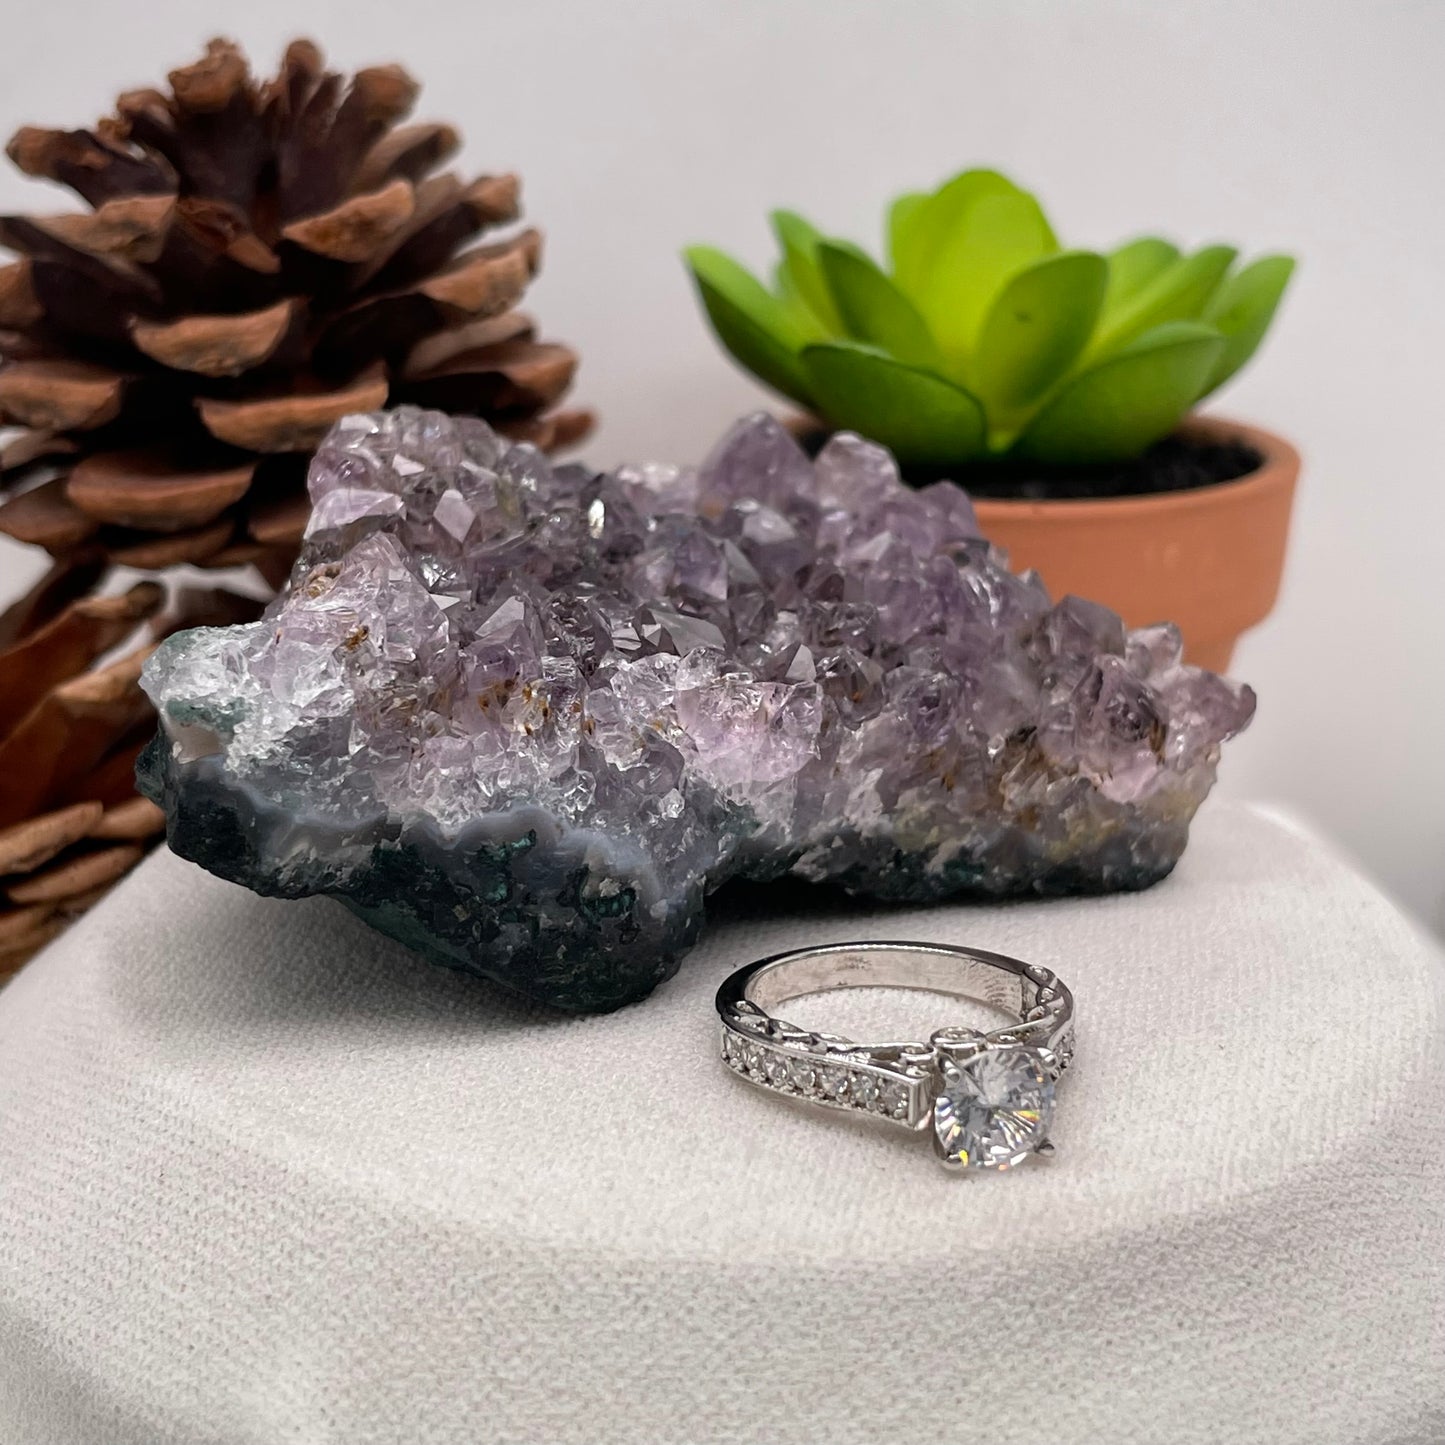 1.34 Carat Round Brilliant Lab Created / Naturel Diamond Engagement Ring